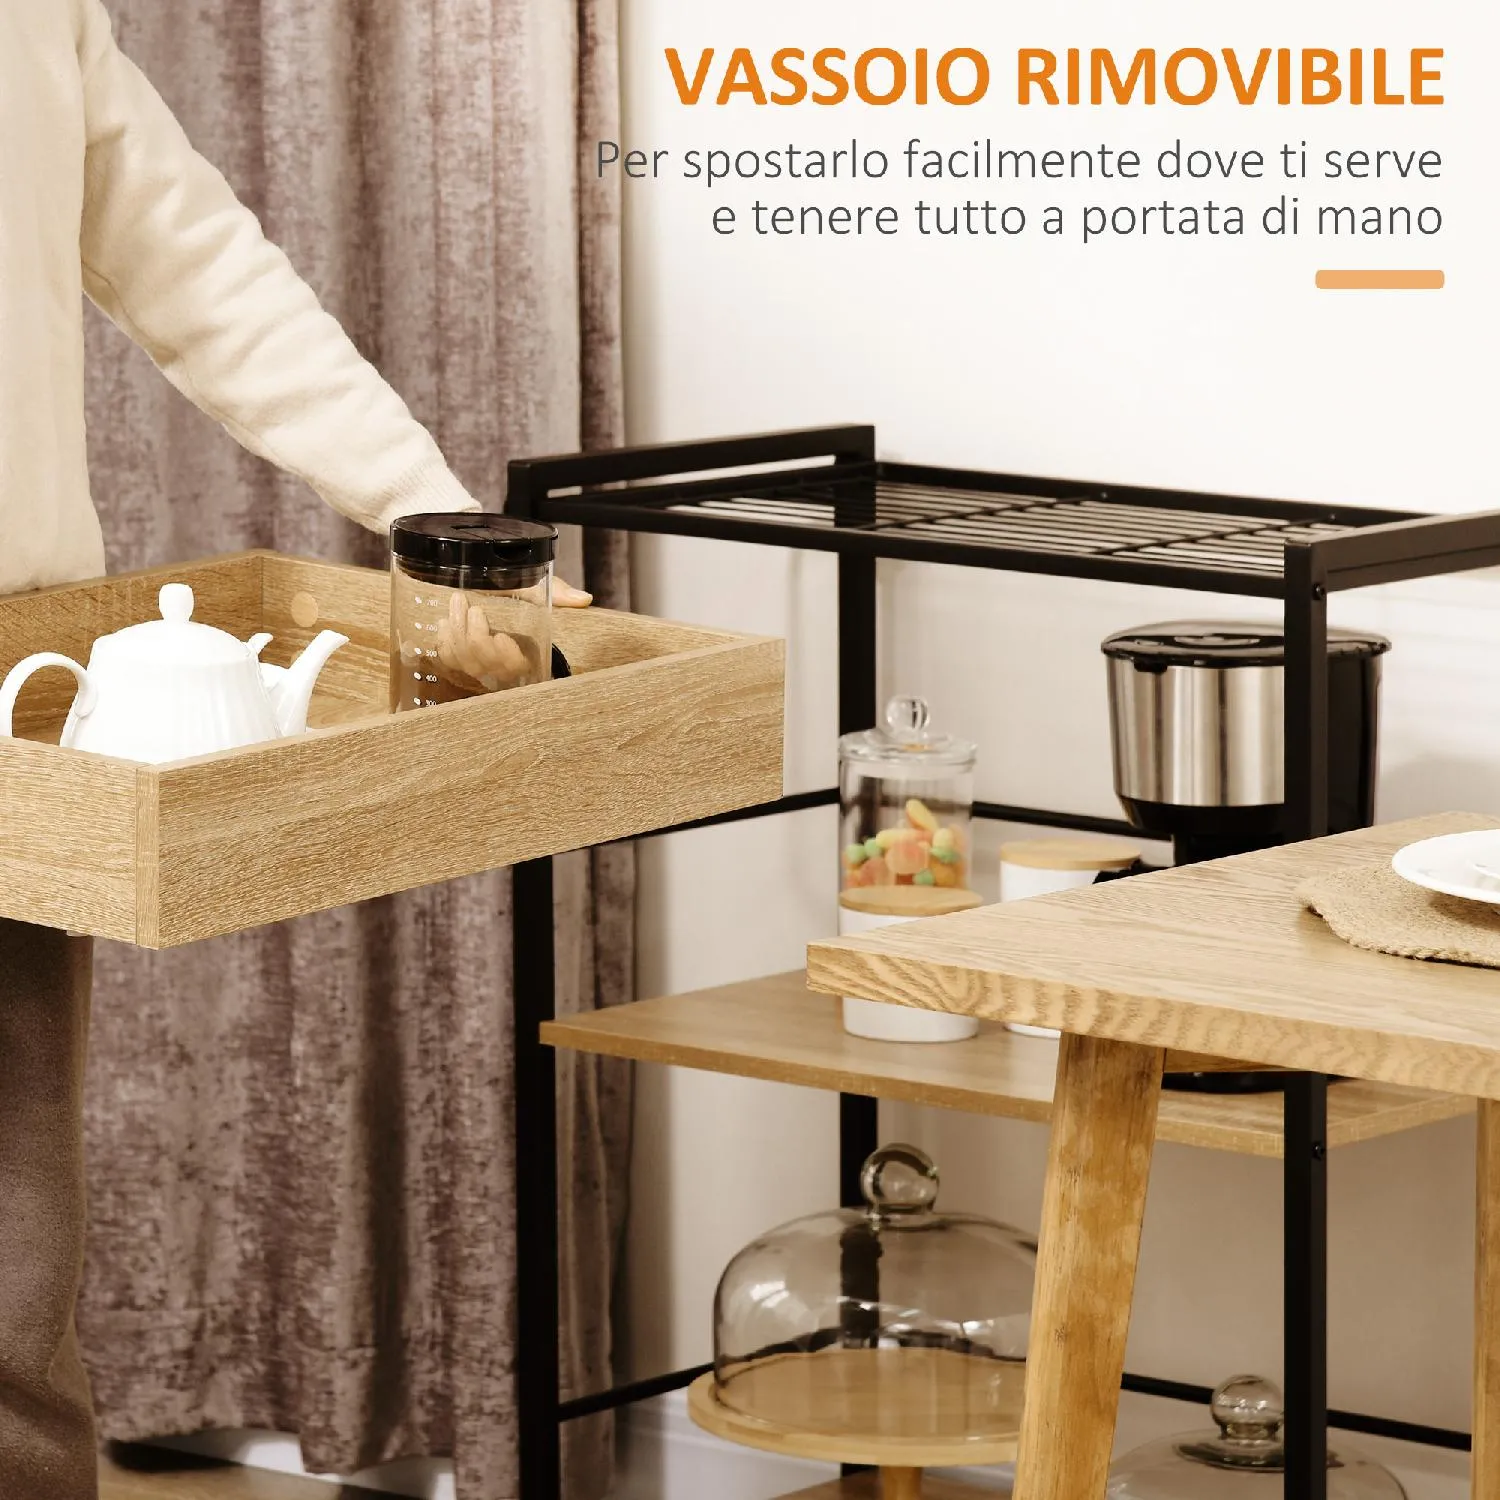 DecHome Carrello Cucina 3 Ripiani con Vassoio Rimovibile e Ruote Girevoli  Carrellino per Cucina in Stile Industriale 72x40x86cm Legno e Nero